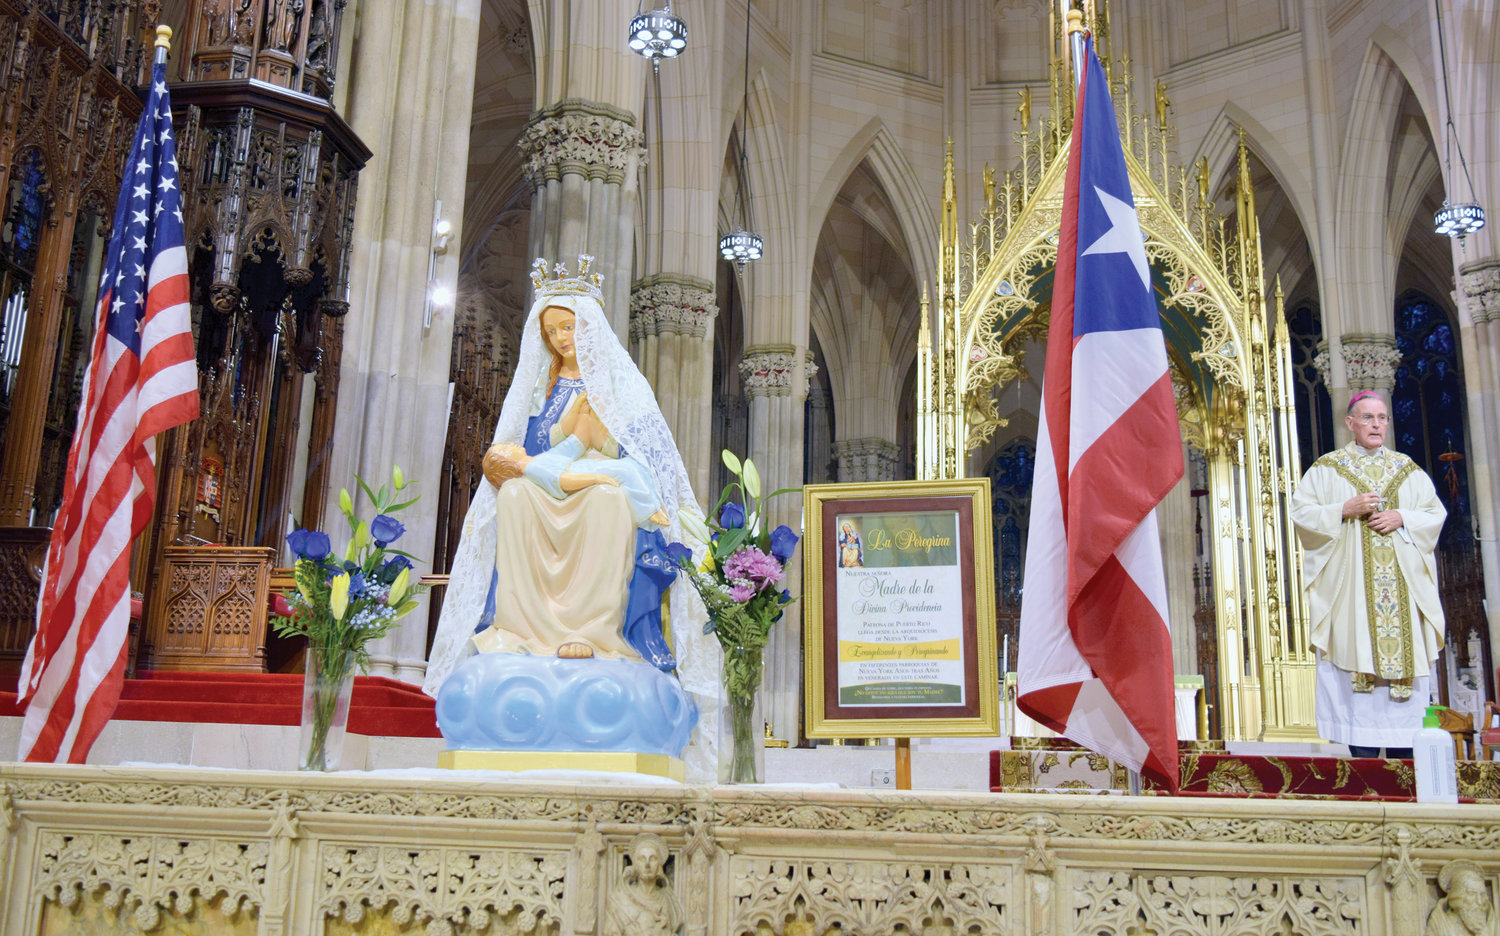 Dentro de la Catedral de San Patricio, una estatua de Nuestra Señora de la Providencia es presentada el 14 de noviembre durante la misa anual en honor de la patrona de Puerto Rico. El obispo auxiliar jubilado Gerald T. Walsh, a la derecha, sirvió como celebrante principal. Fue la 41ª misa anual de Nuestra Señora de la Providencia en la catedral.